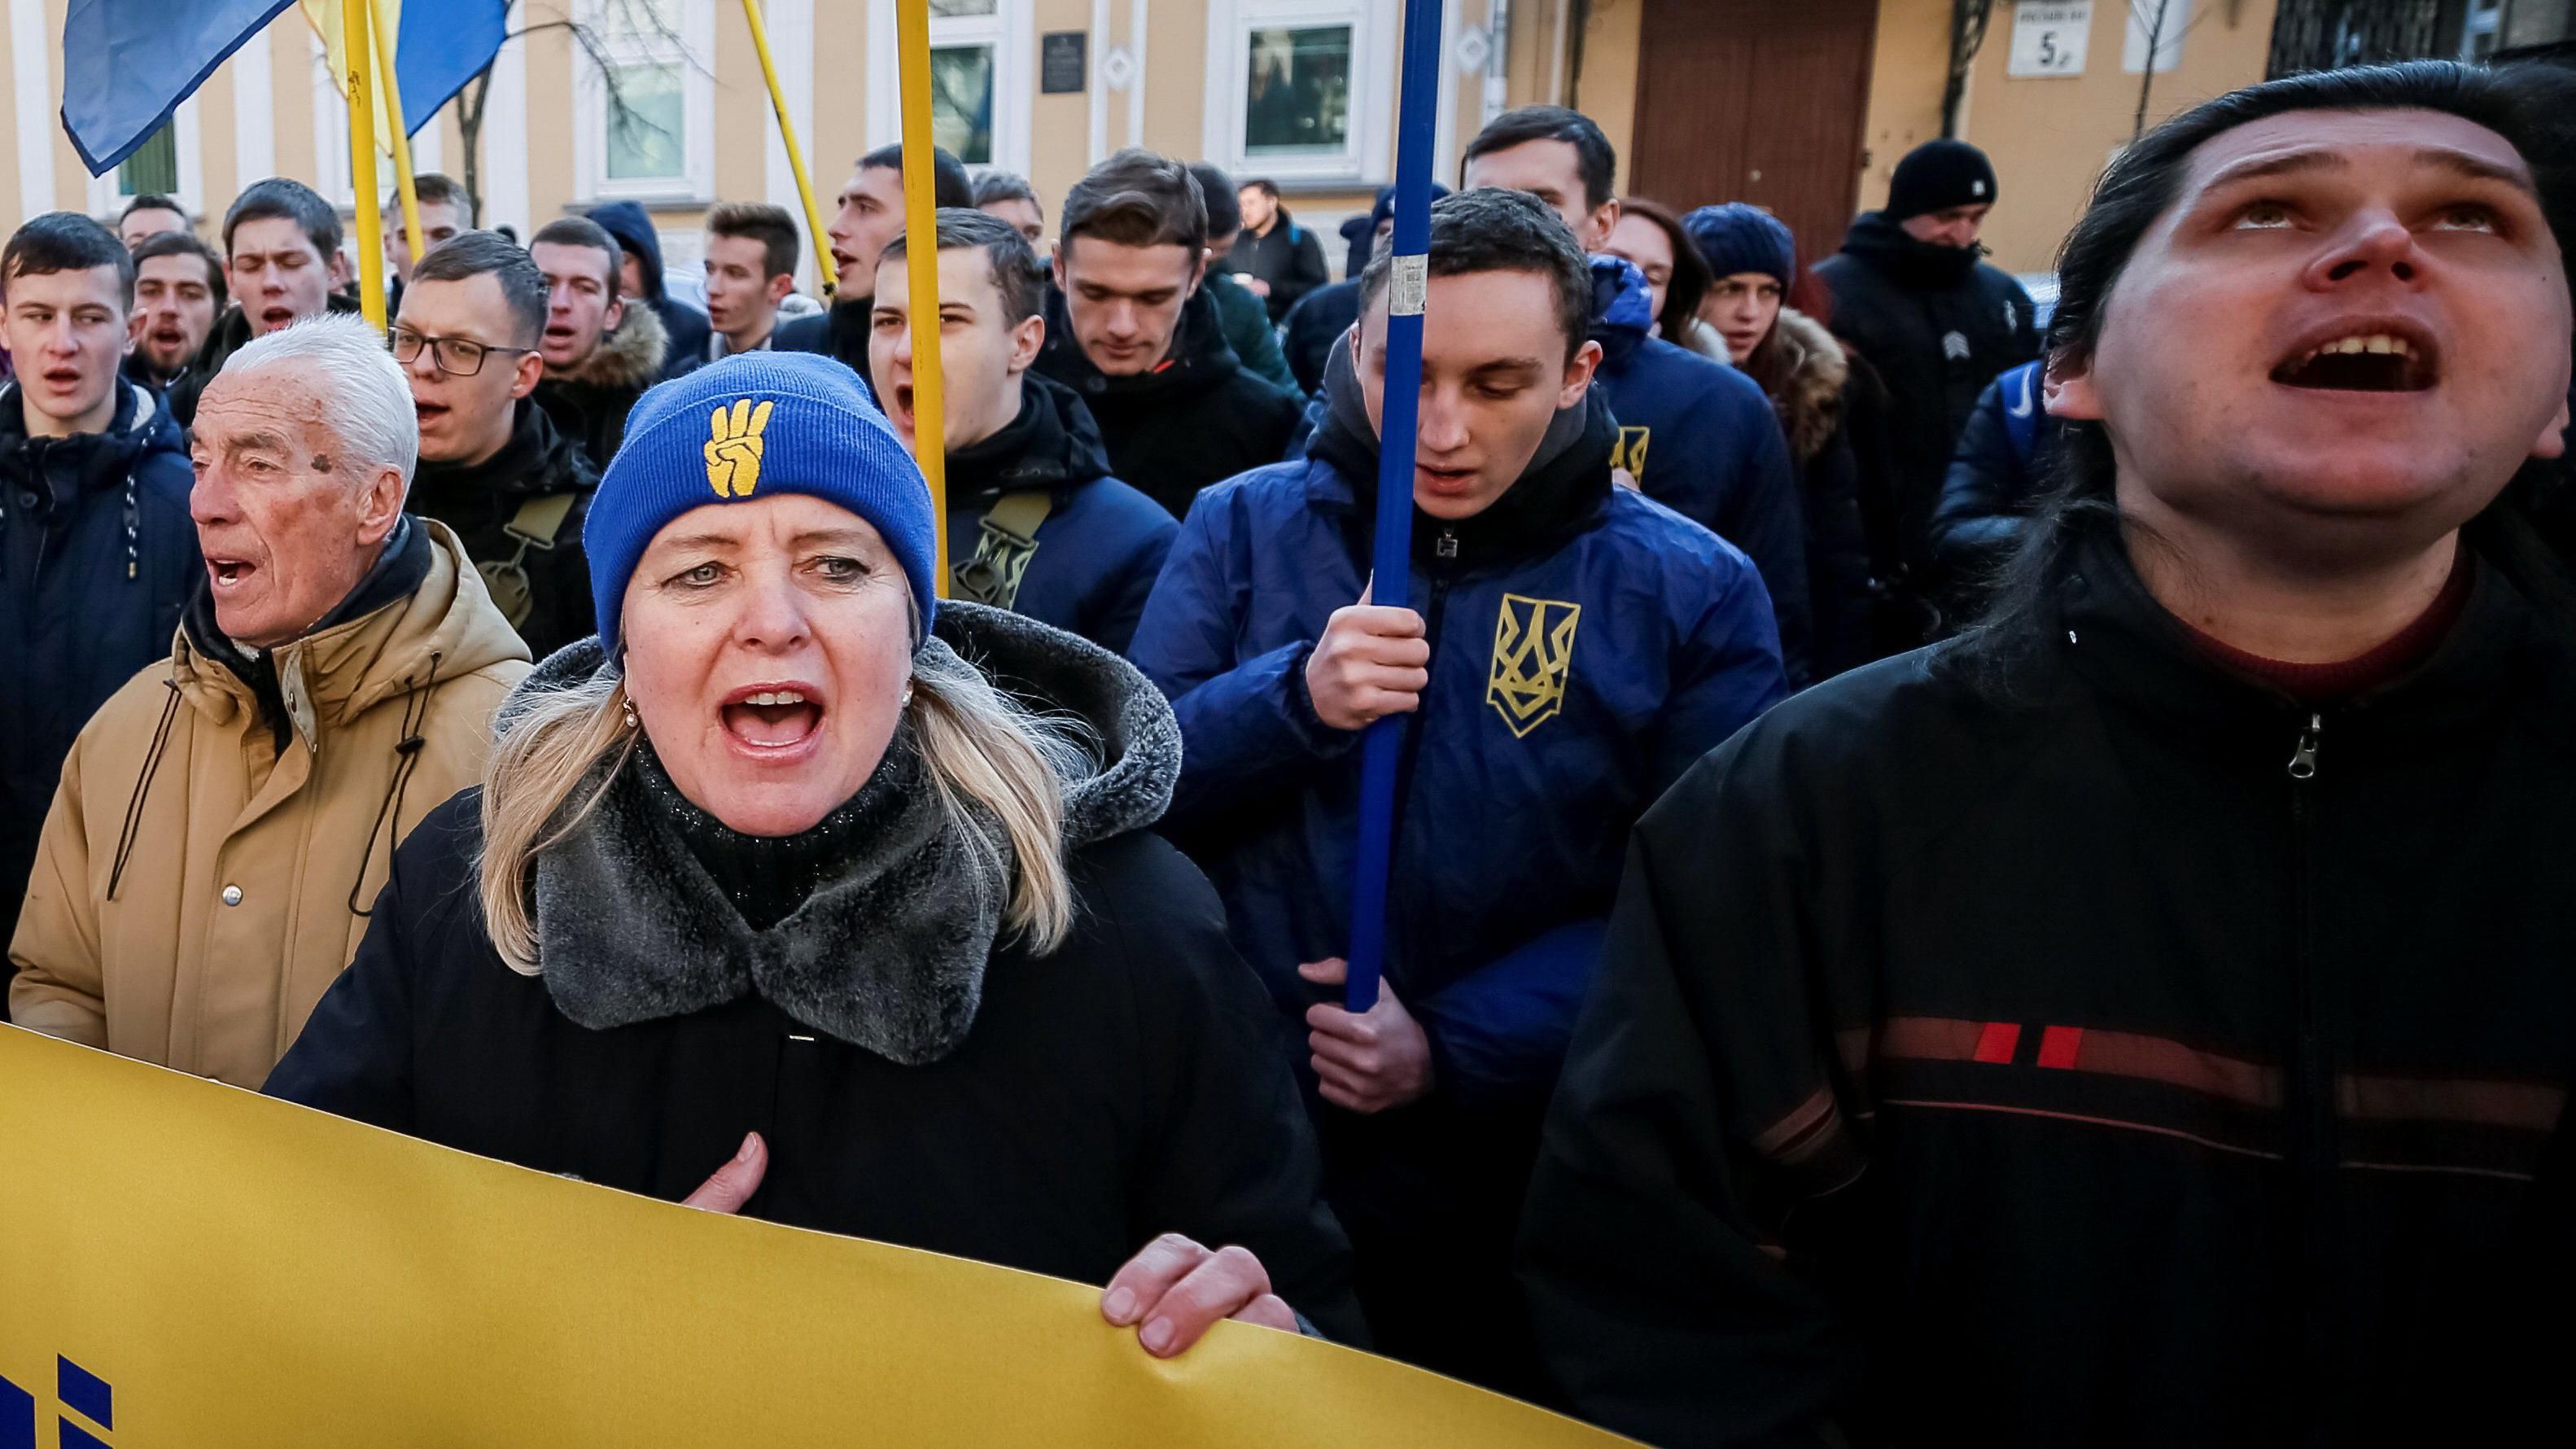 Націоналісти згадали про "порядок від Бандери" під посольством Польщі у Києві 